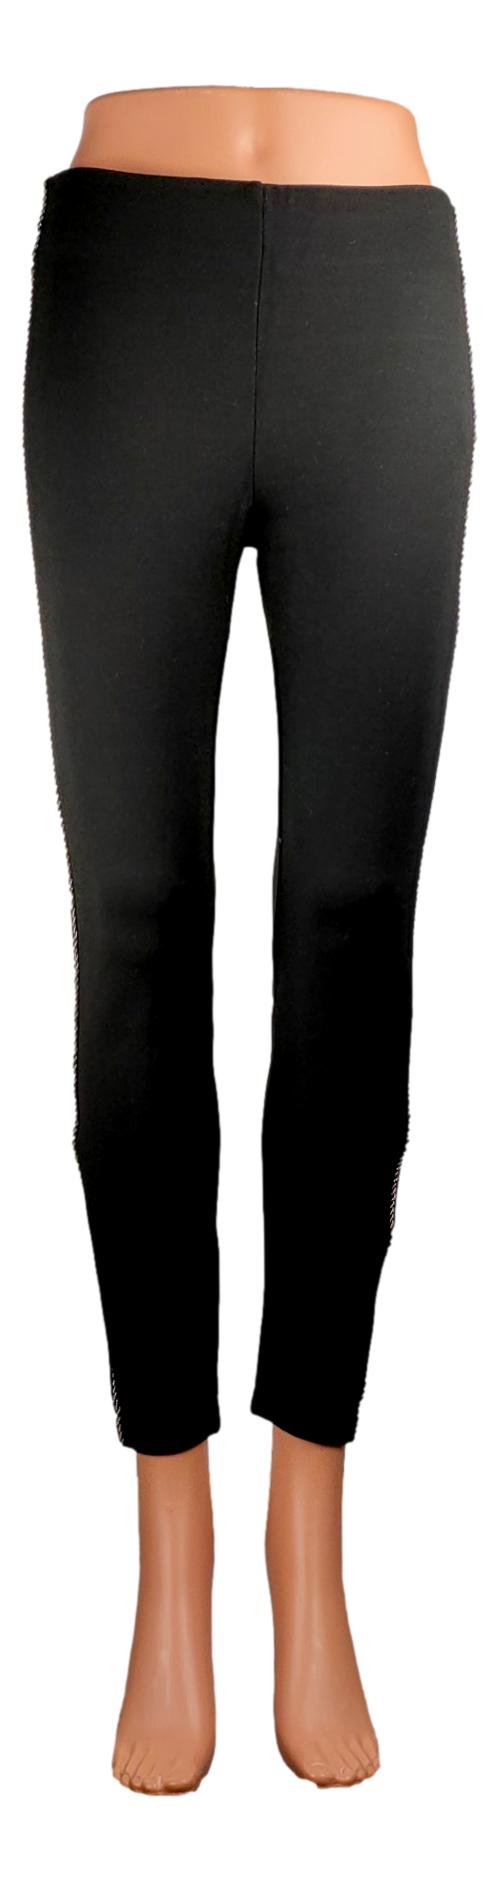 Pantalon Zara - Taille 40